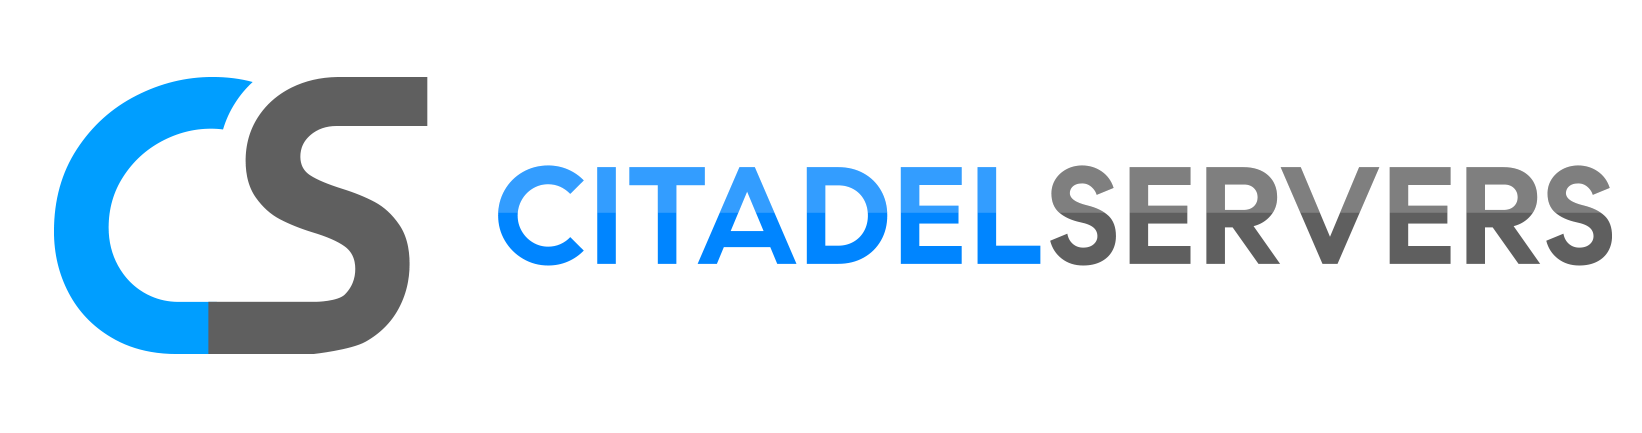 Citadel Servers Logo